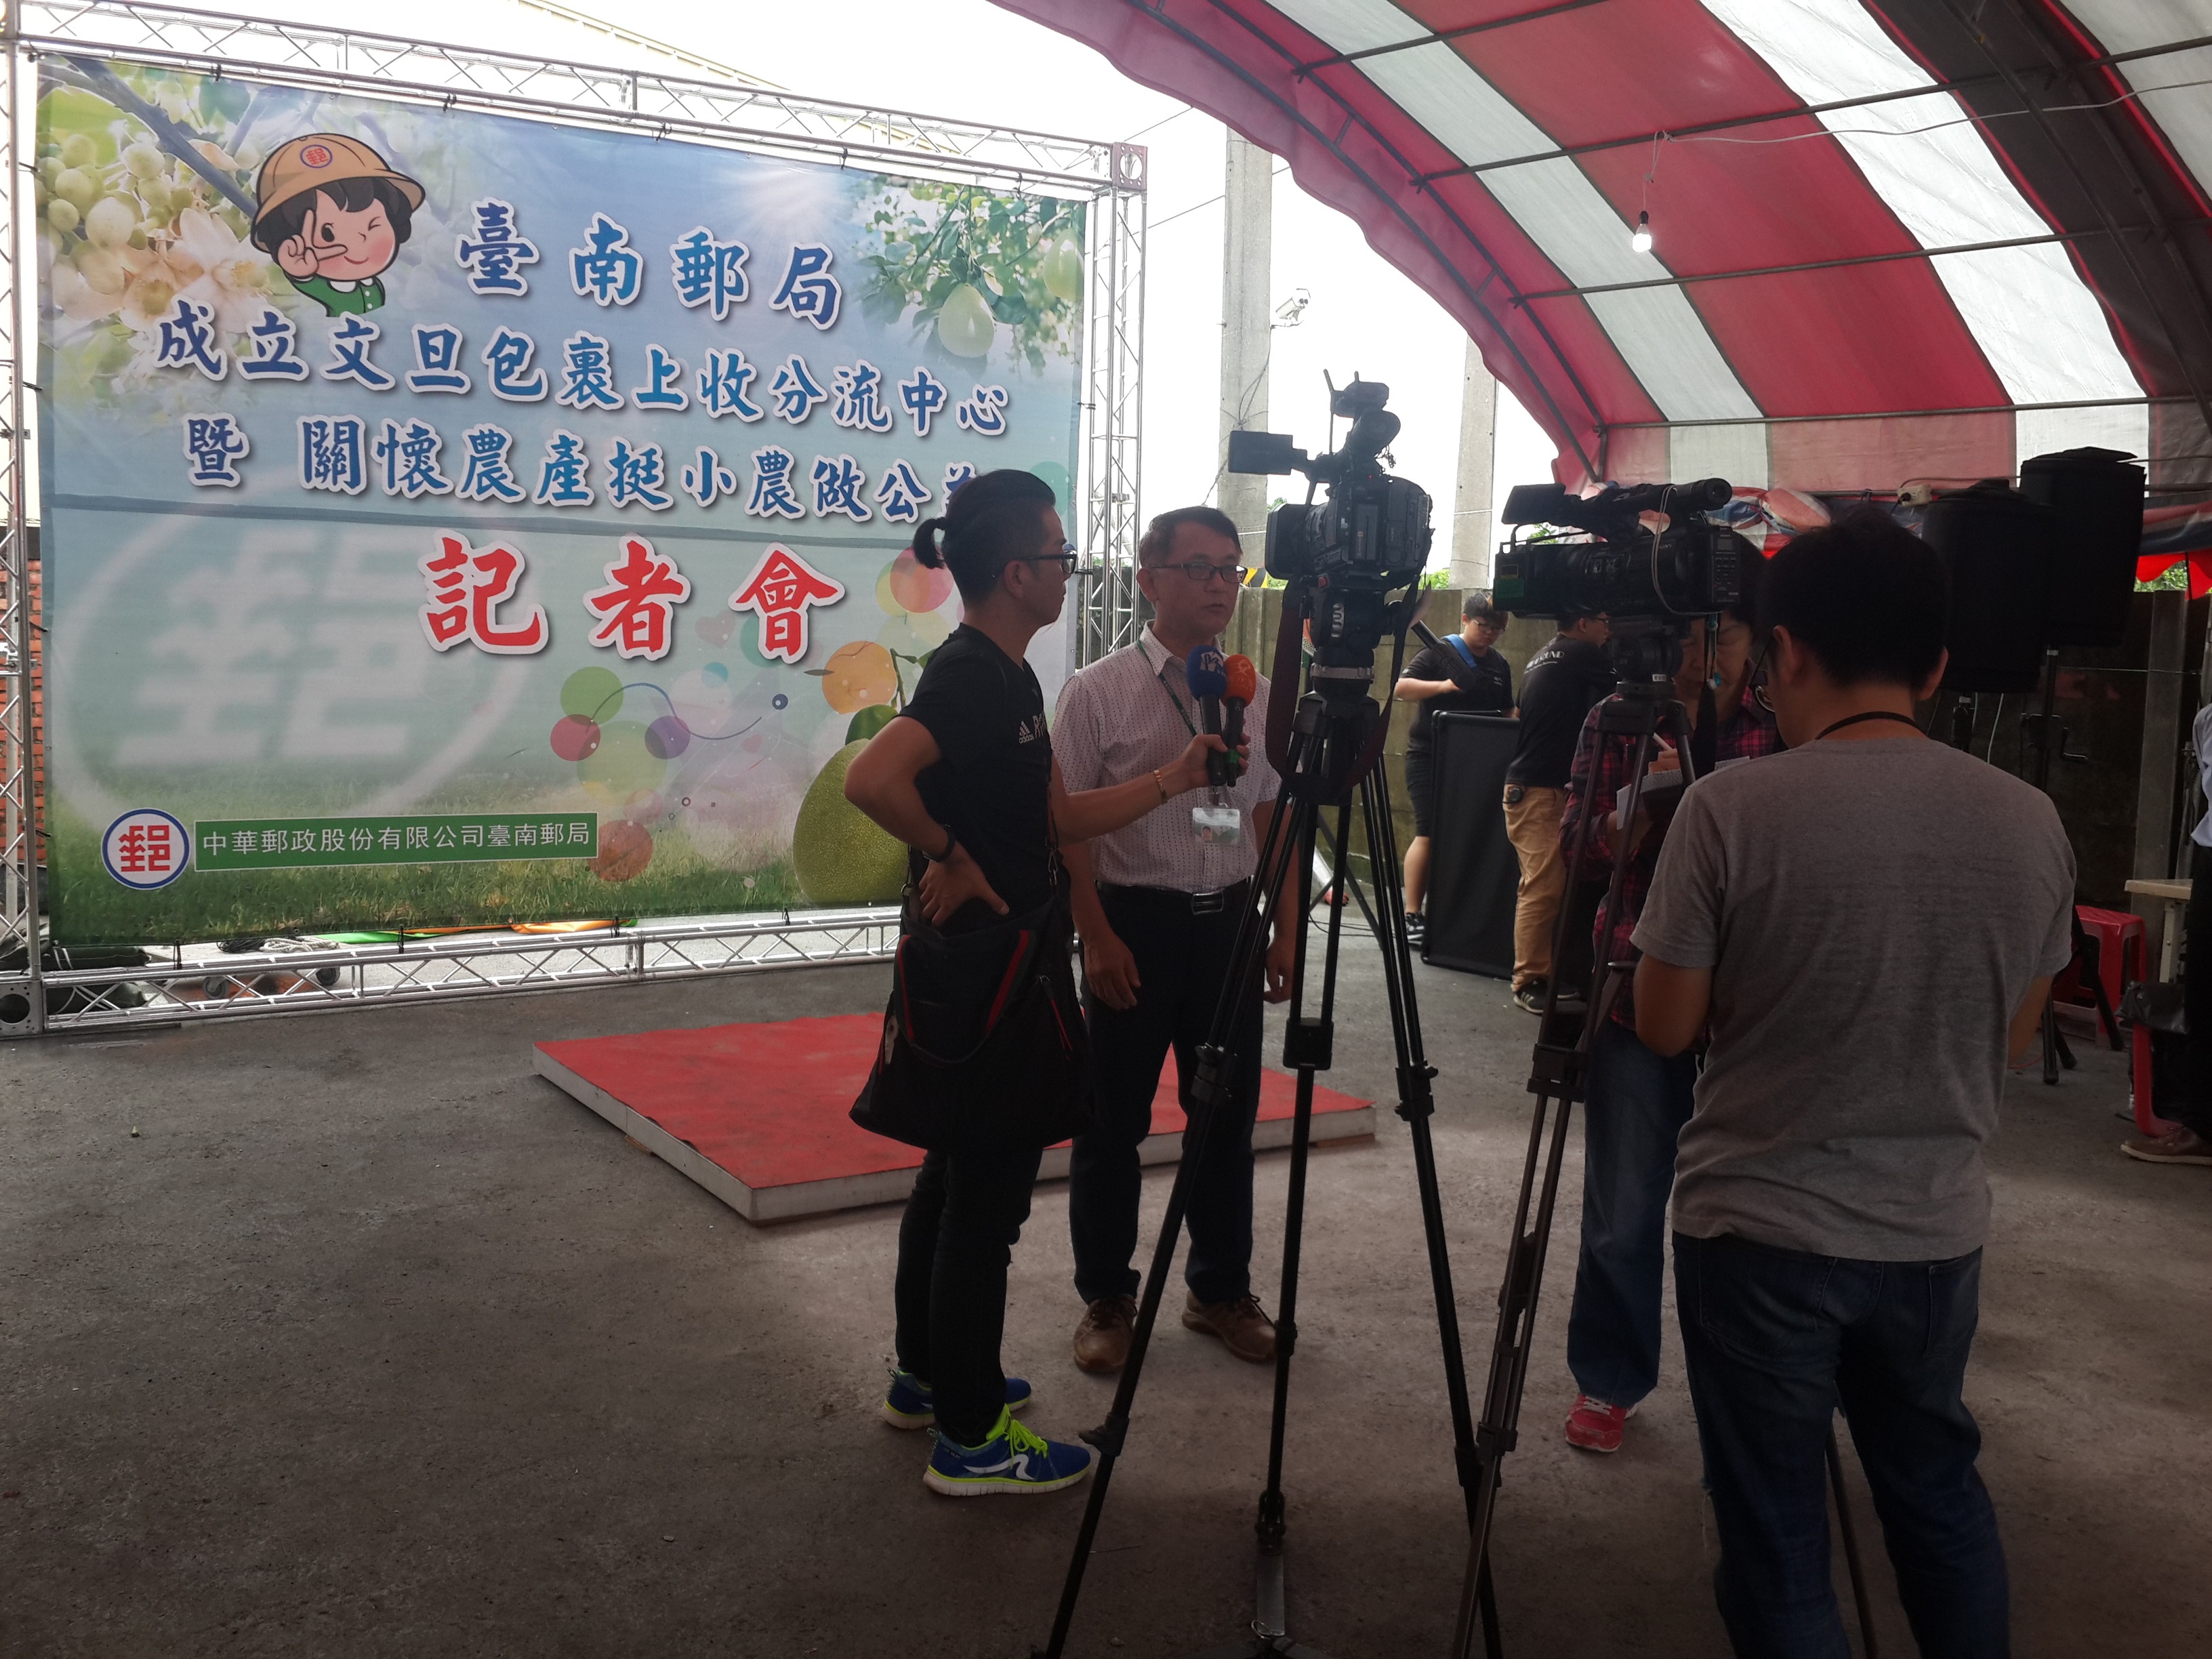 臺南郵局成立上收分流中心 & 關懷農產挺小農記者會